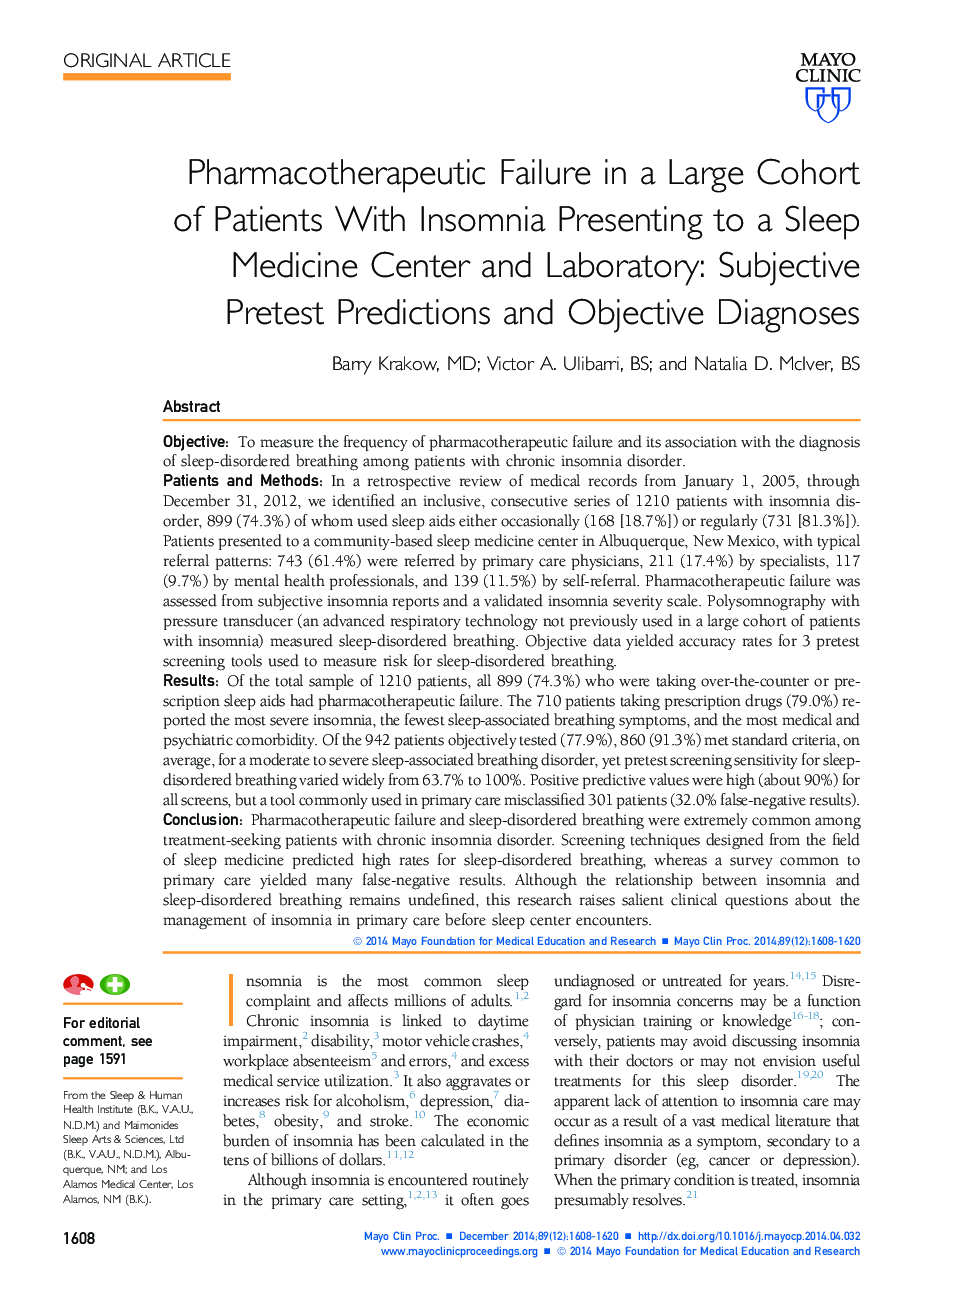 شکست فارماکولوژیک در یک گروه بزرگ از بیماران مبتلا به بی خوابی به مرکز پزشکی و آزمایشگاه خواب: پیش بینی های پیش بینی ذهنی و تشخیص هدف 